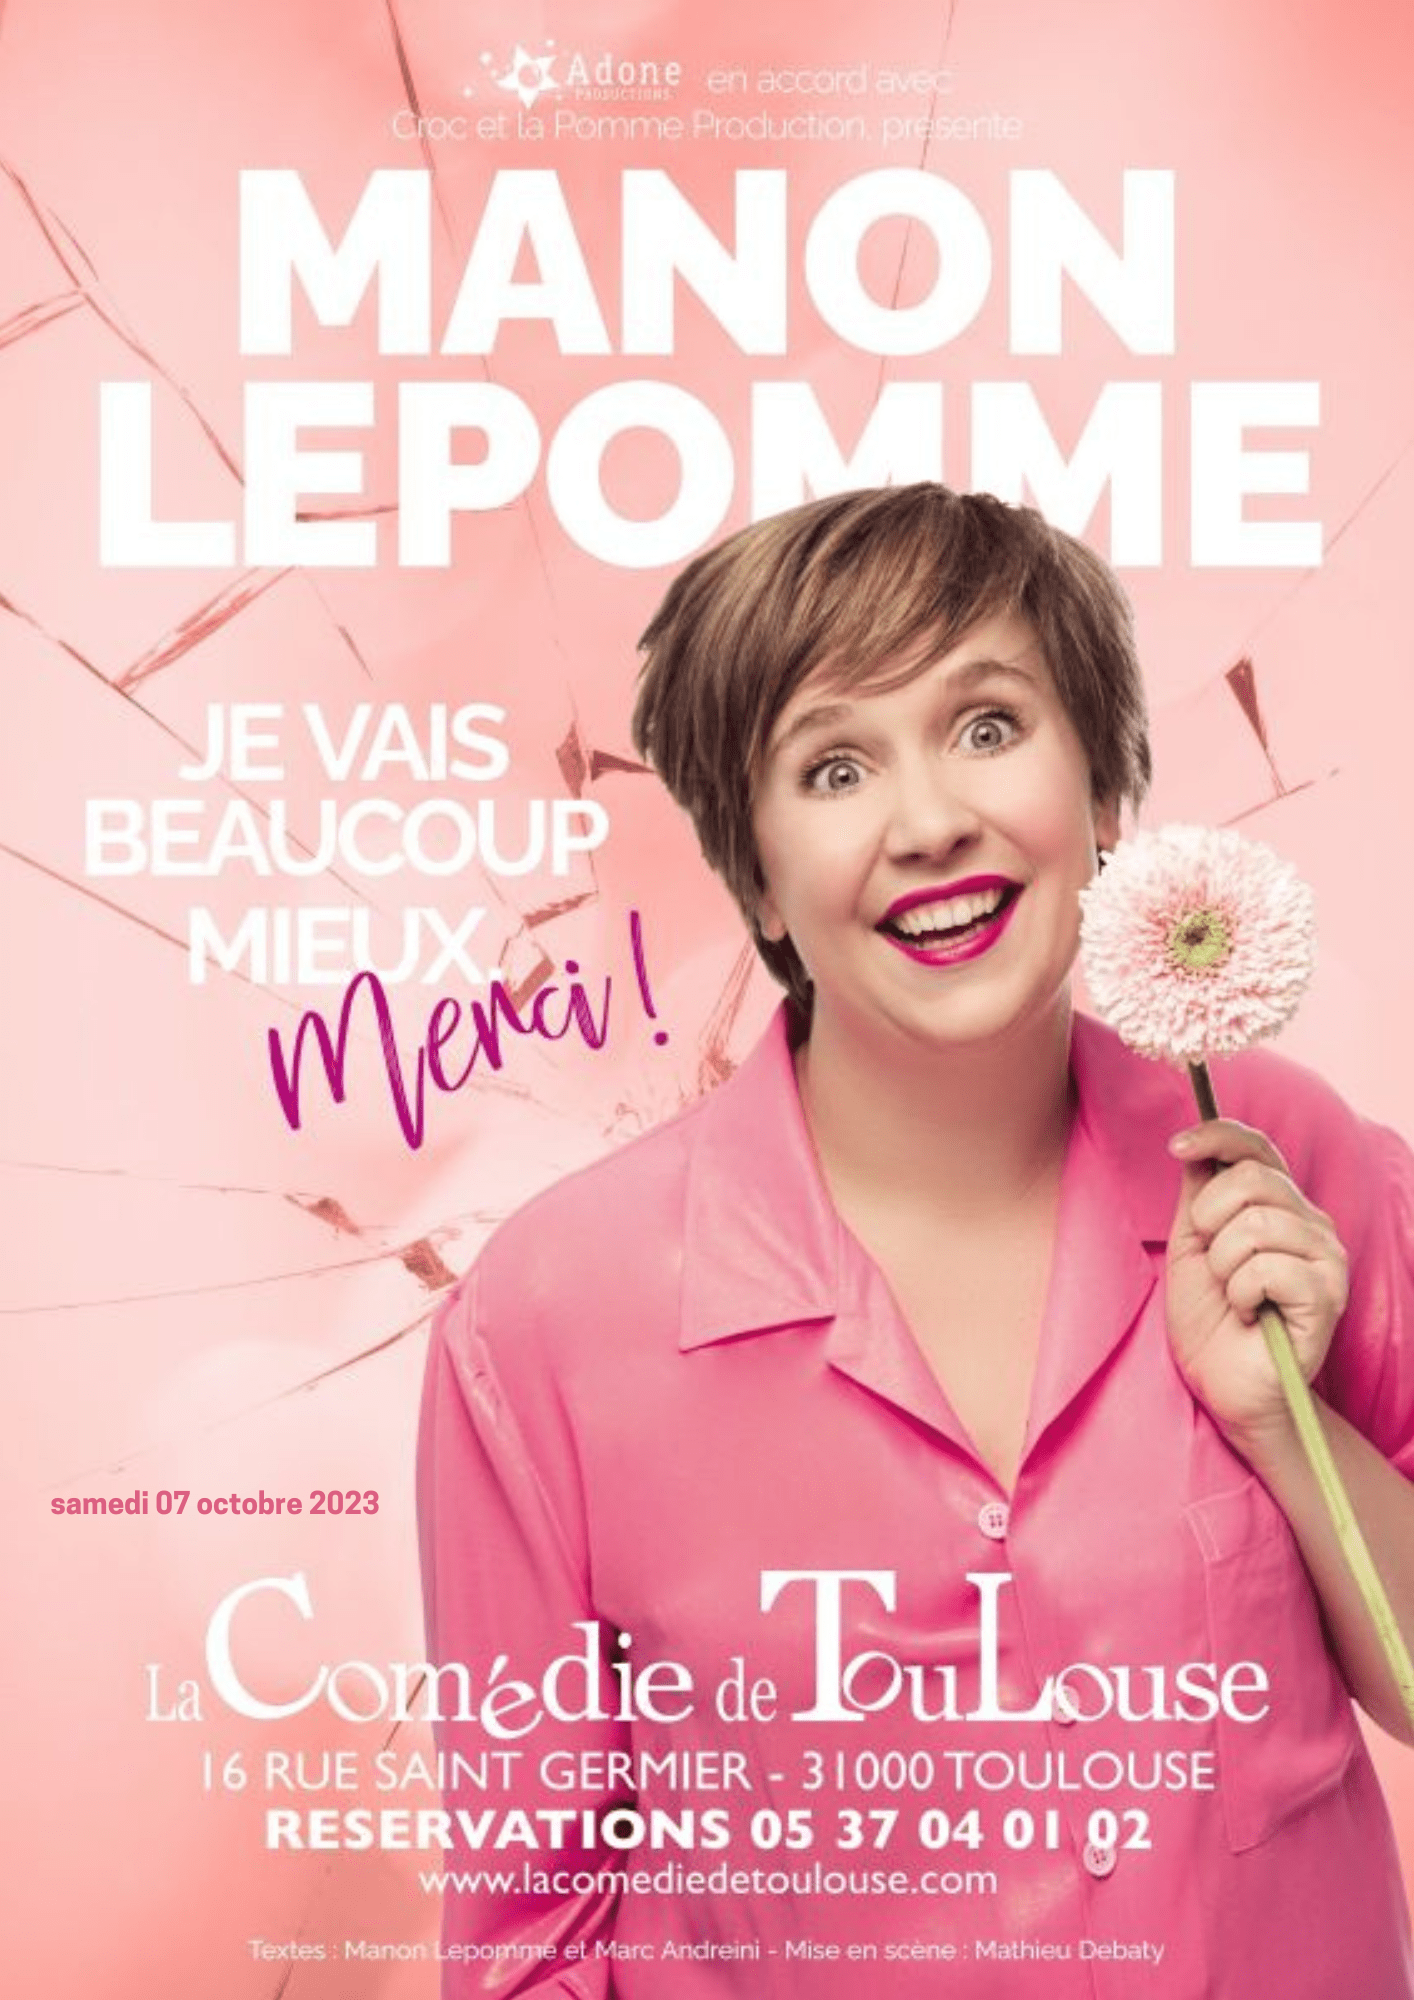 La Comédie de Toulouse - Manon Lepomme